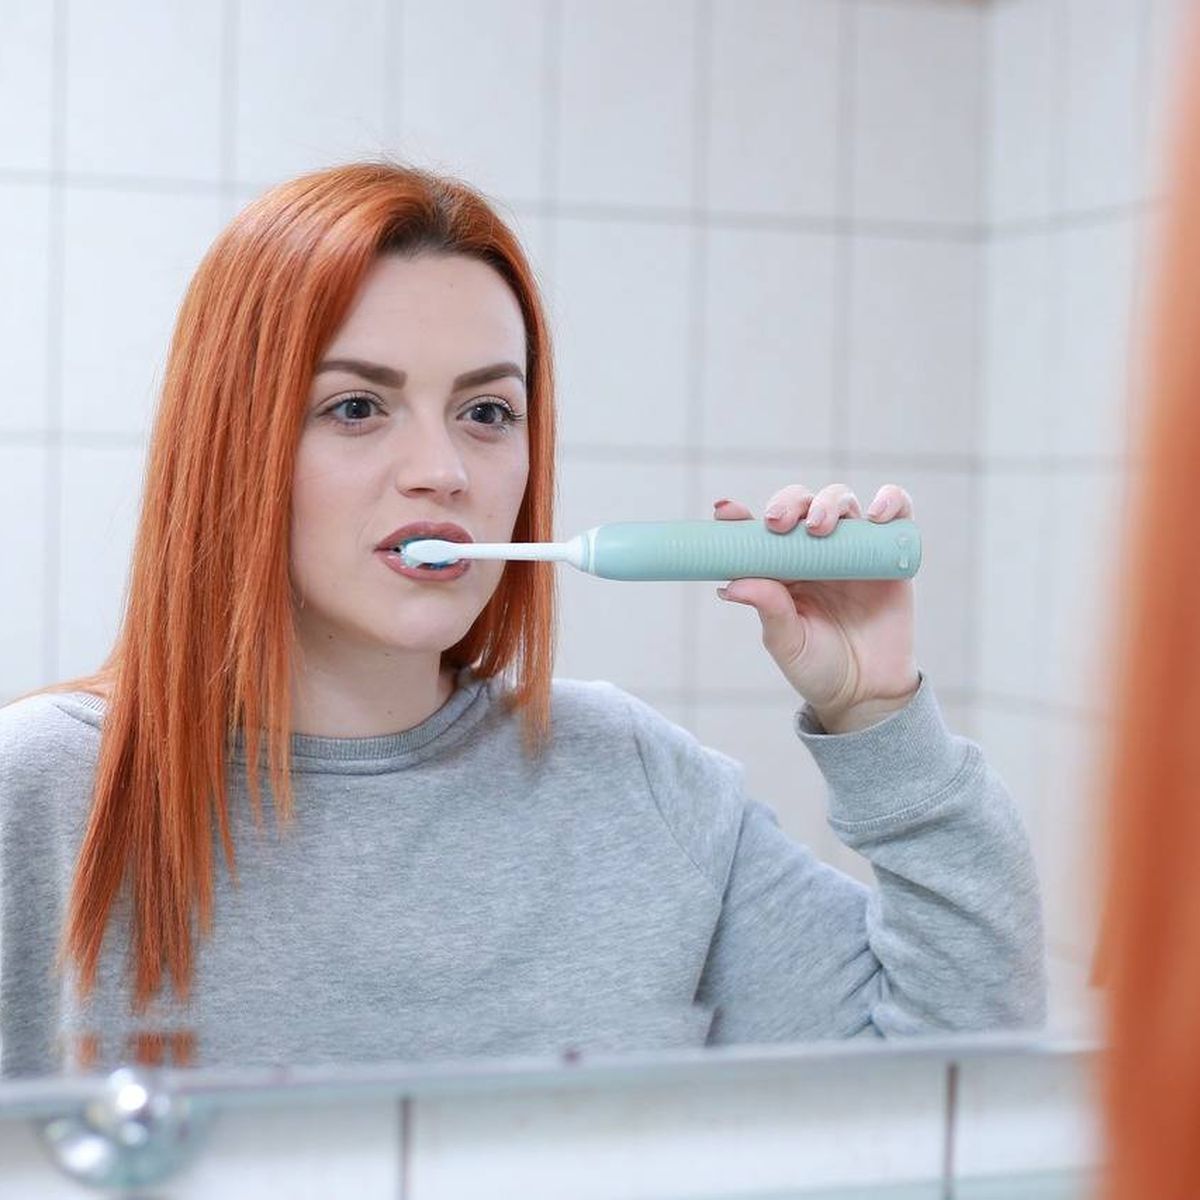 Comprar cepillos de dientes eléctricos online